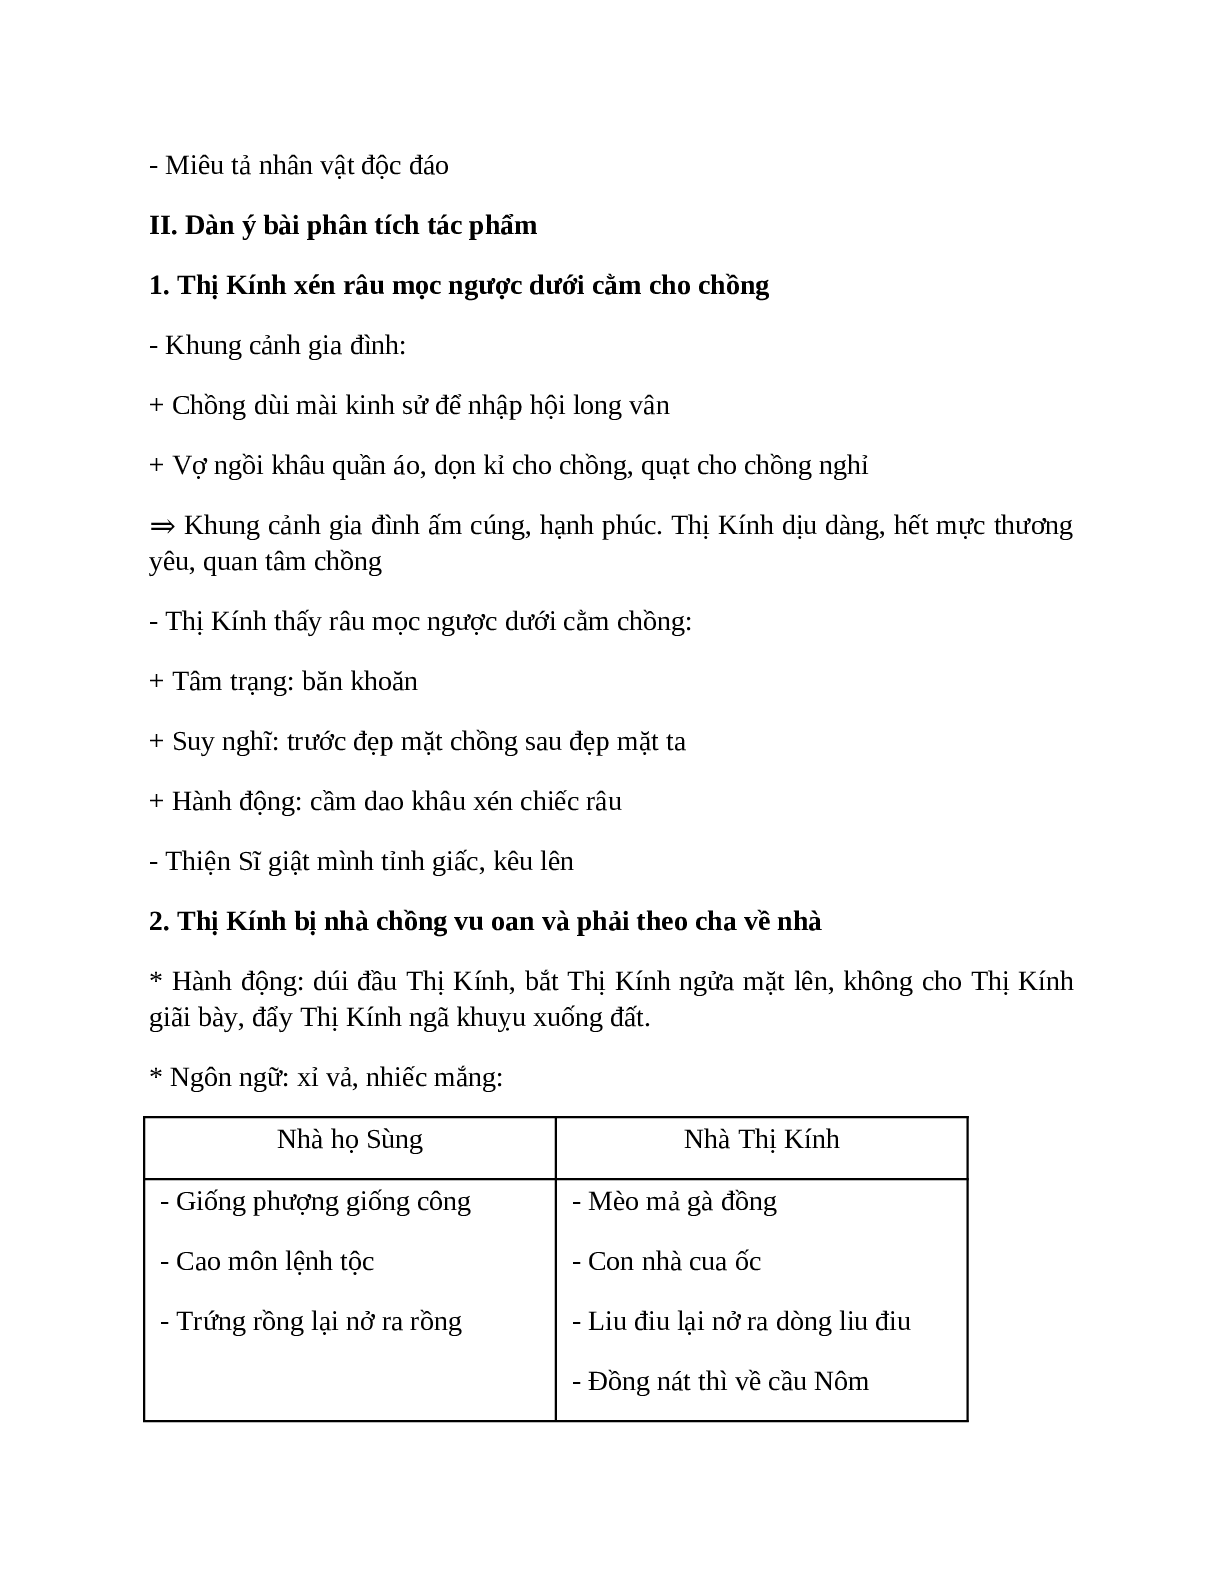 Sơ đồ tư duy bài Quan Âm Thị Kính dễ nhớ, ngắn nhất - Ngữ văn lớp 7 (trang 3)